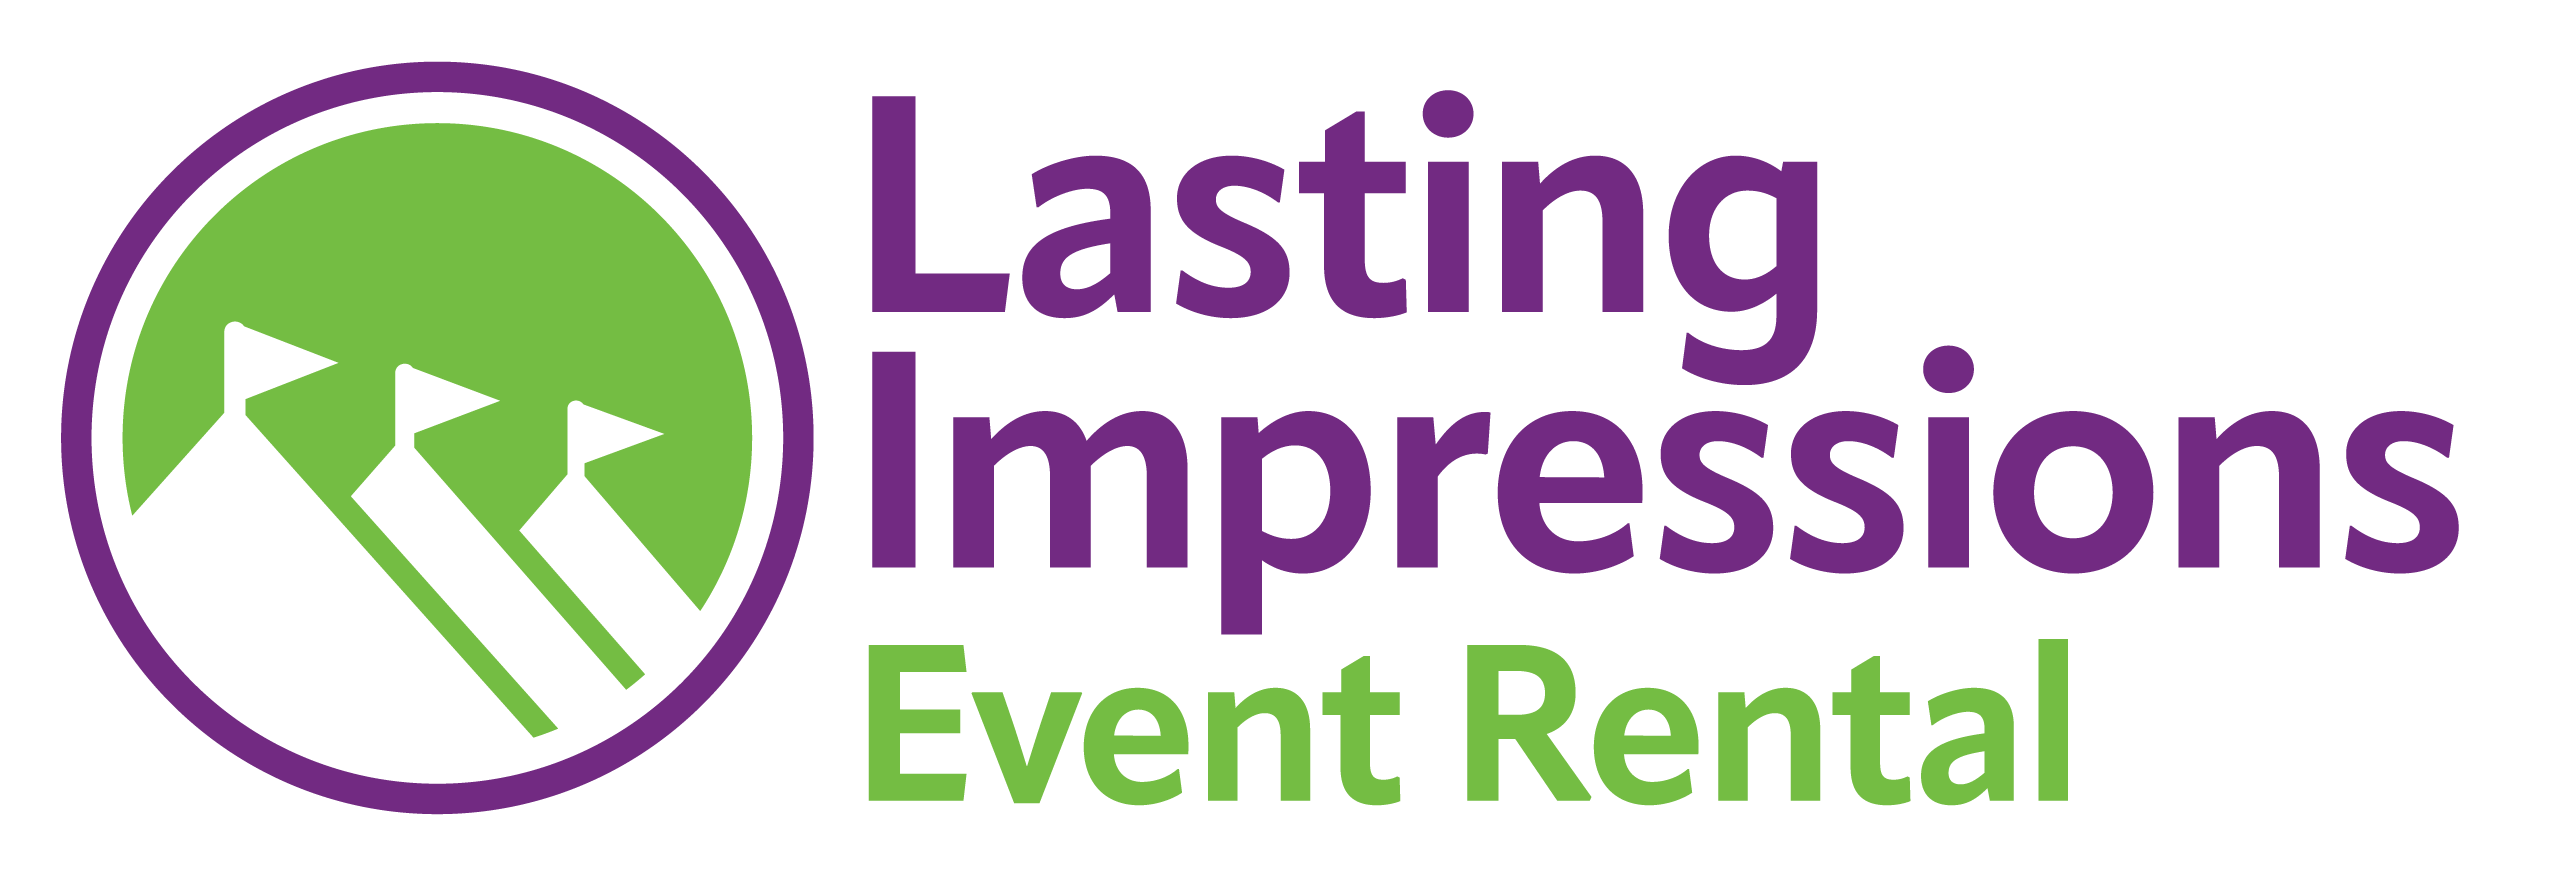 Lasting Impressions Event Rentals